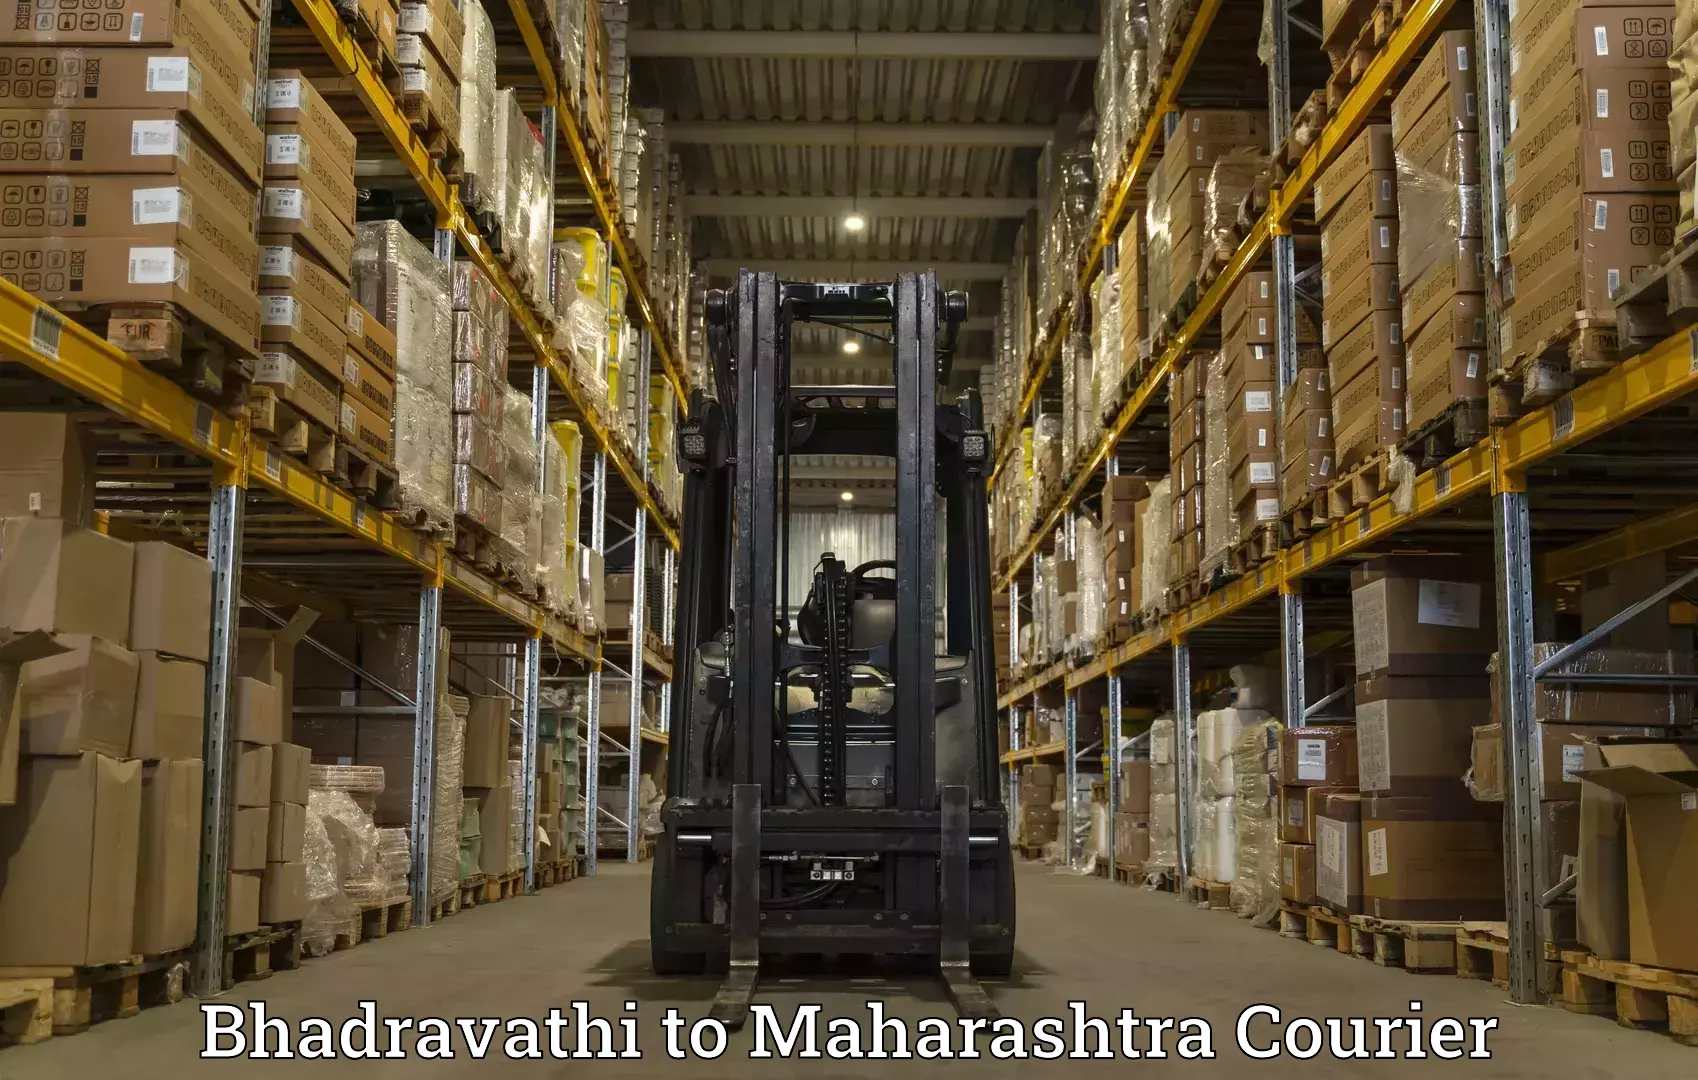 Nationwide shipping capabilities Bhadravathi to Aurangabad